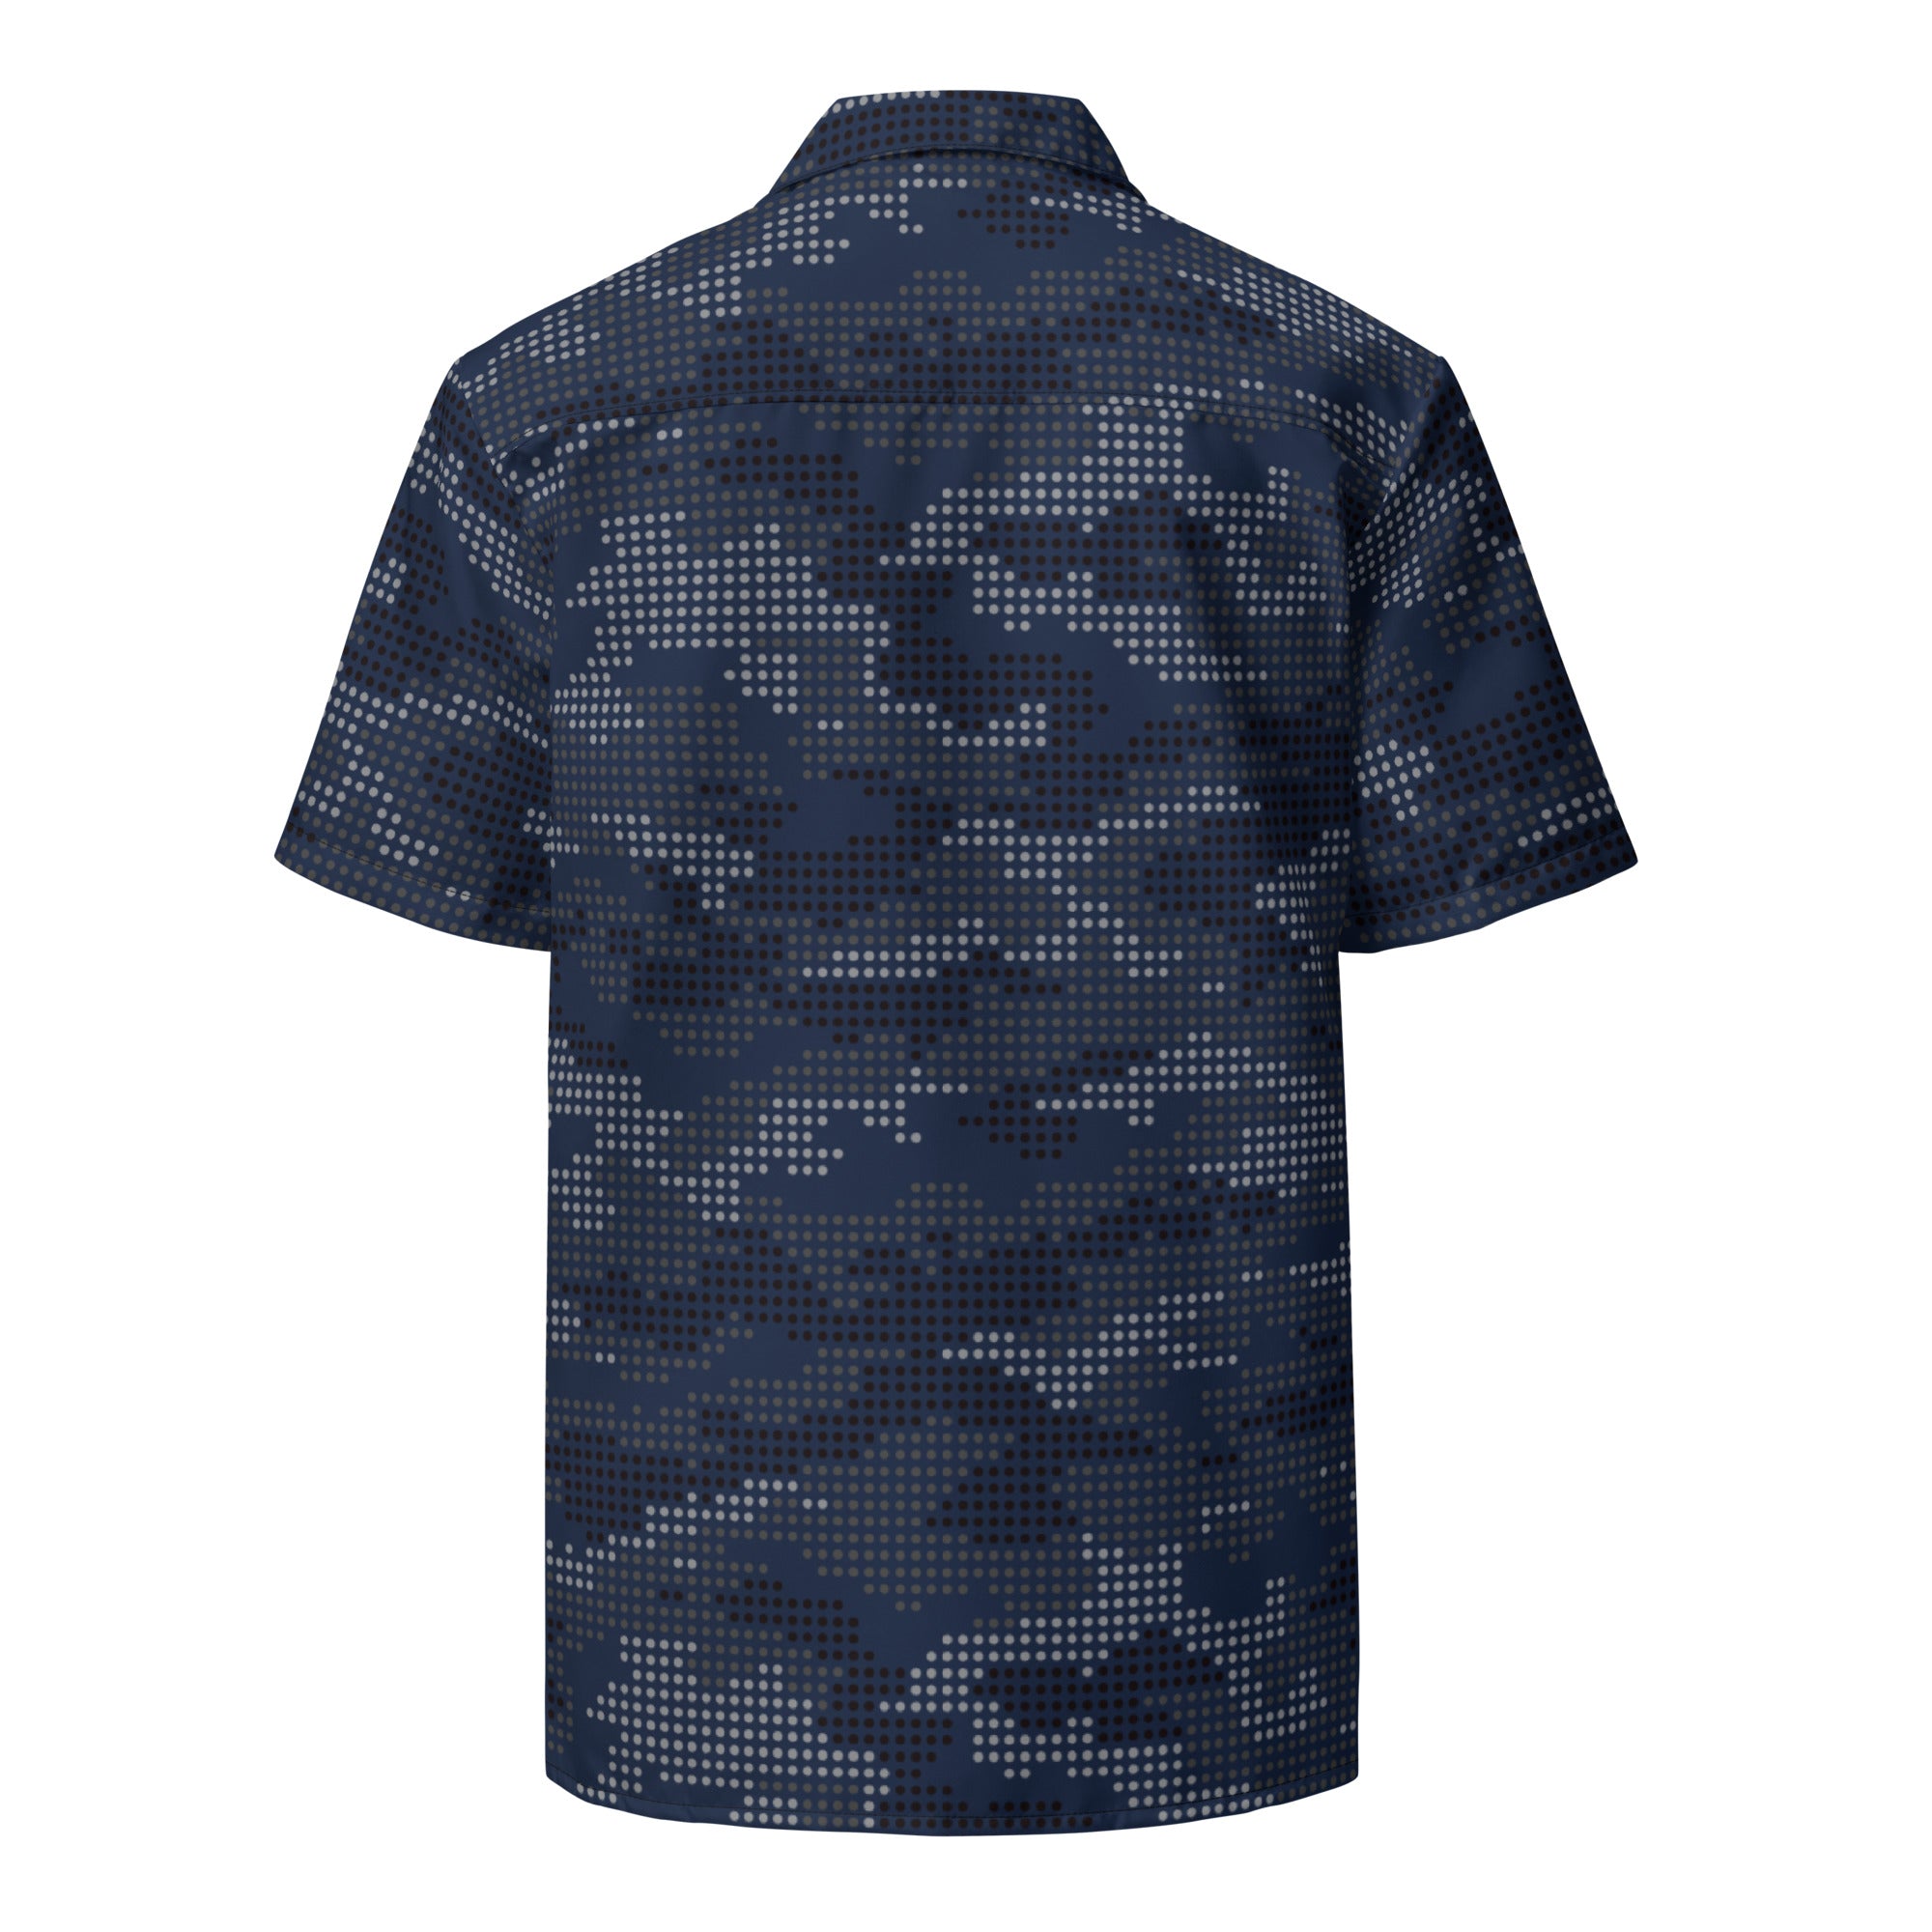 Night Ops Hawaiian Digital Camo Shirt